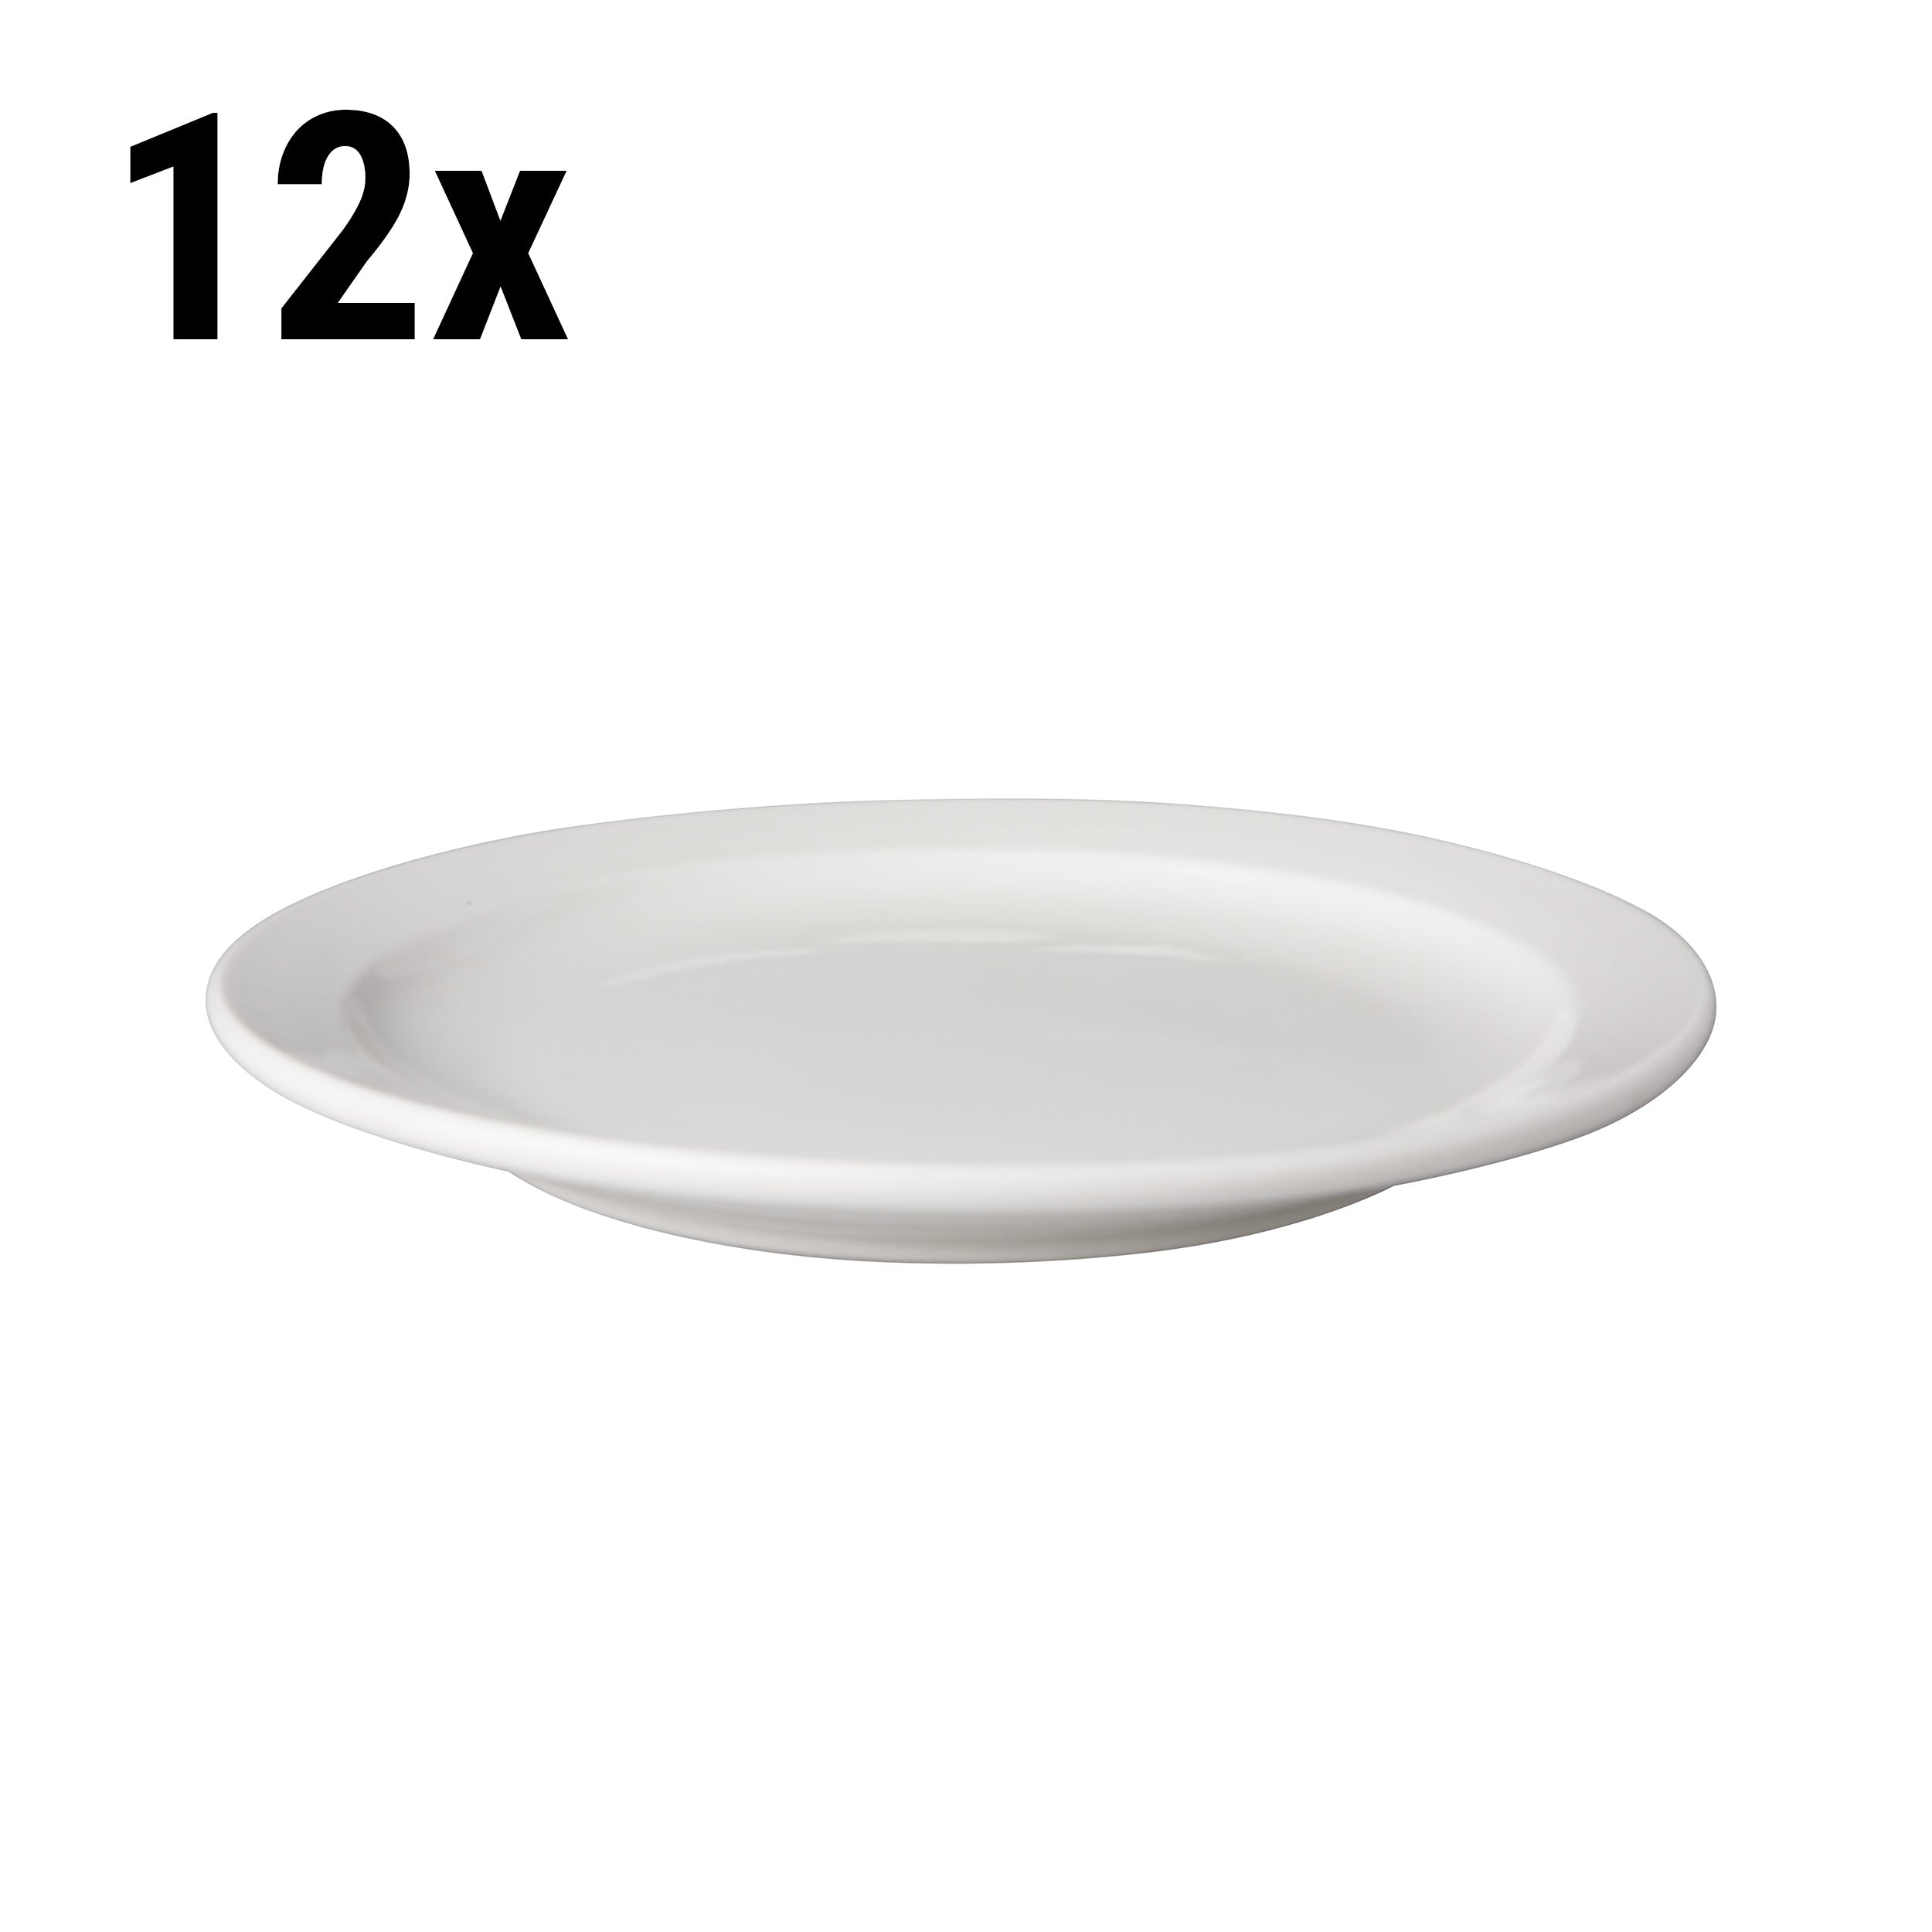 (12 stk.) Flad tallerken Mammoet - Ø 21 cm - Hvid